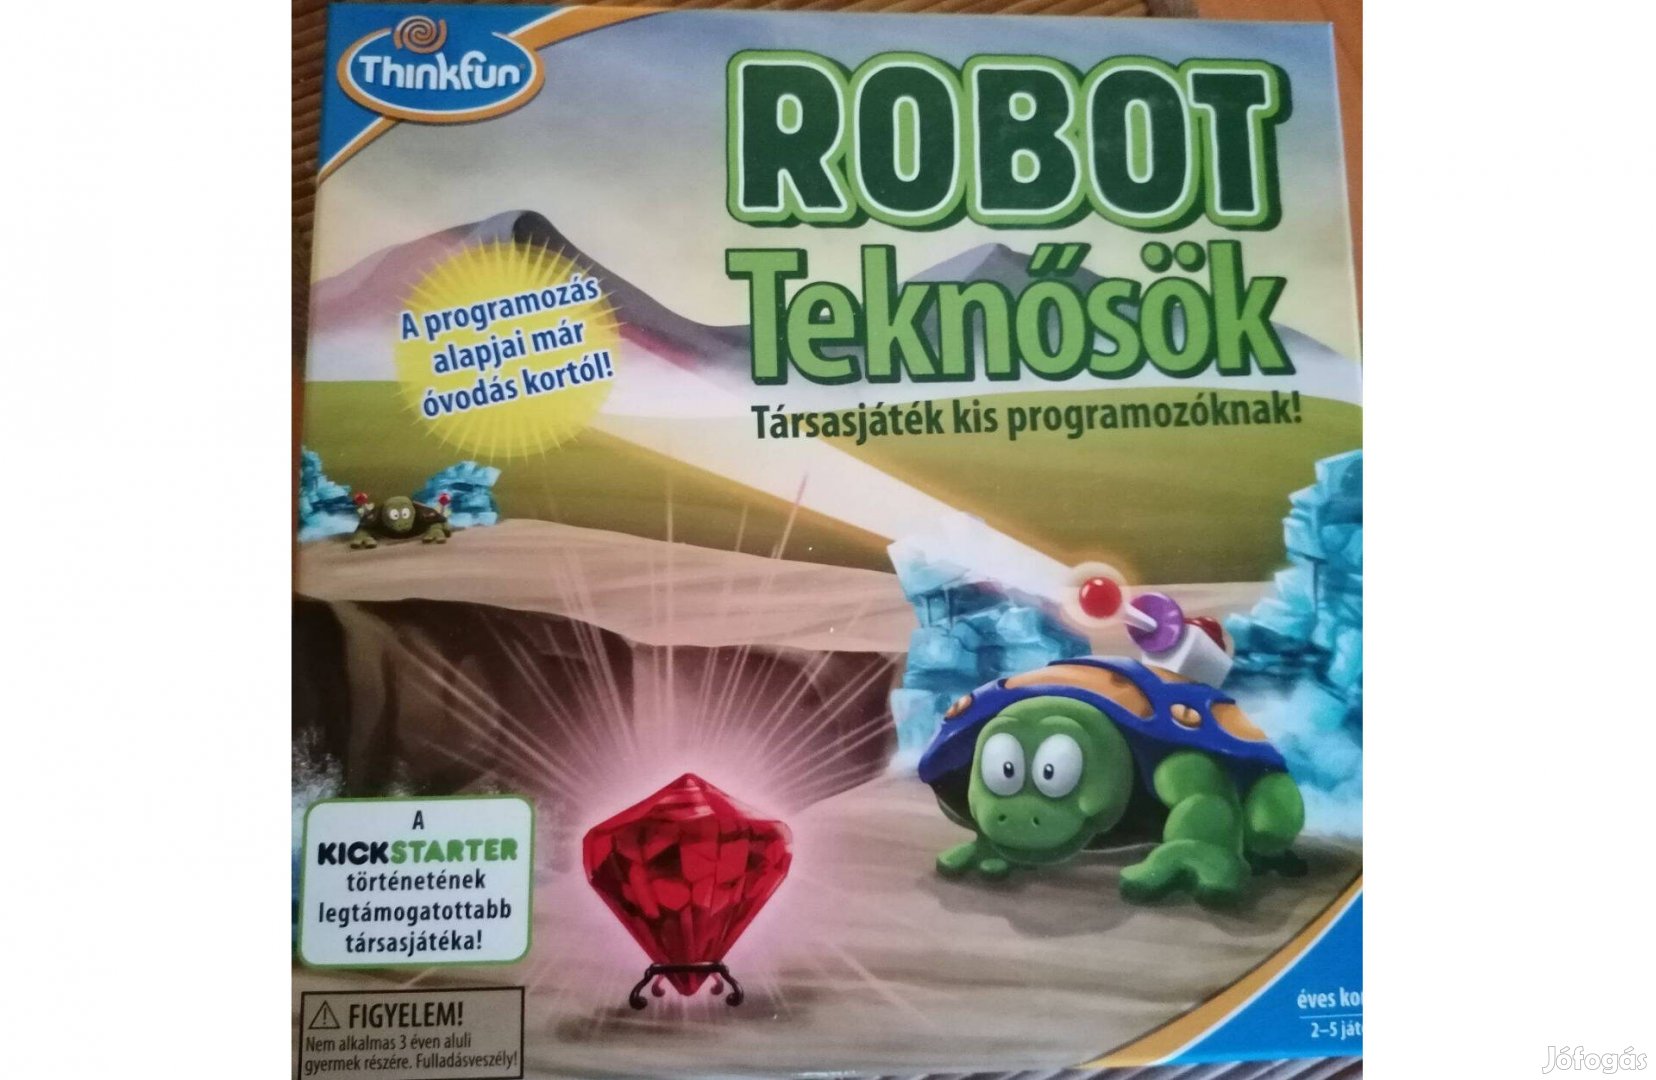 Trobot teknősök társasjáték